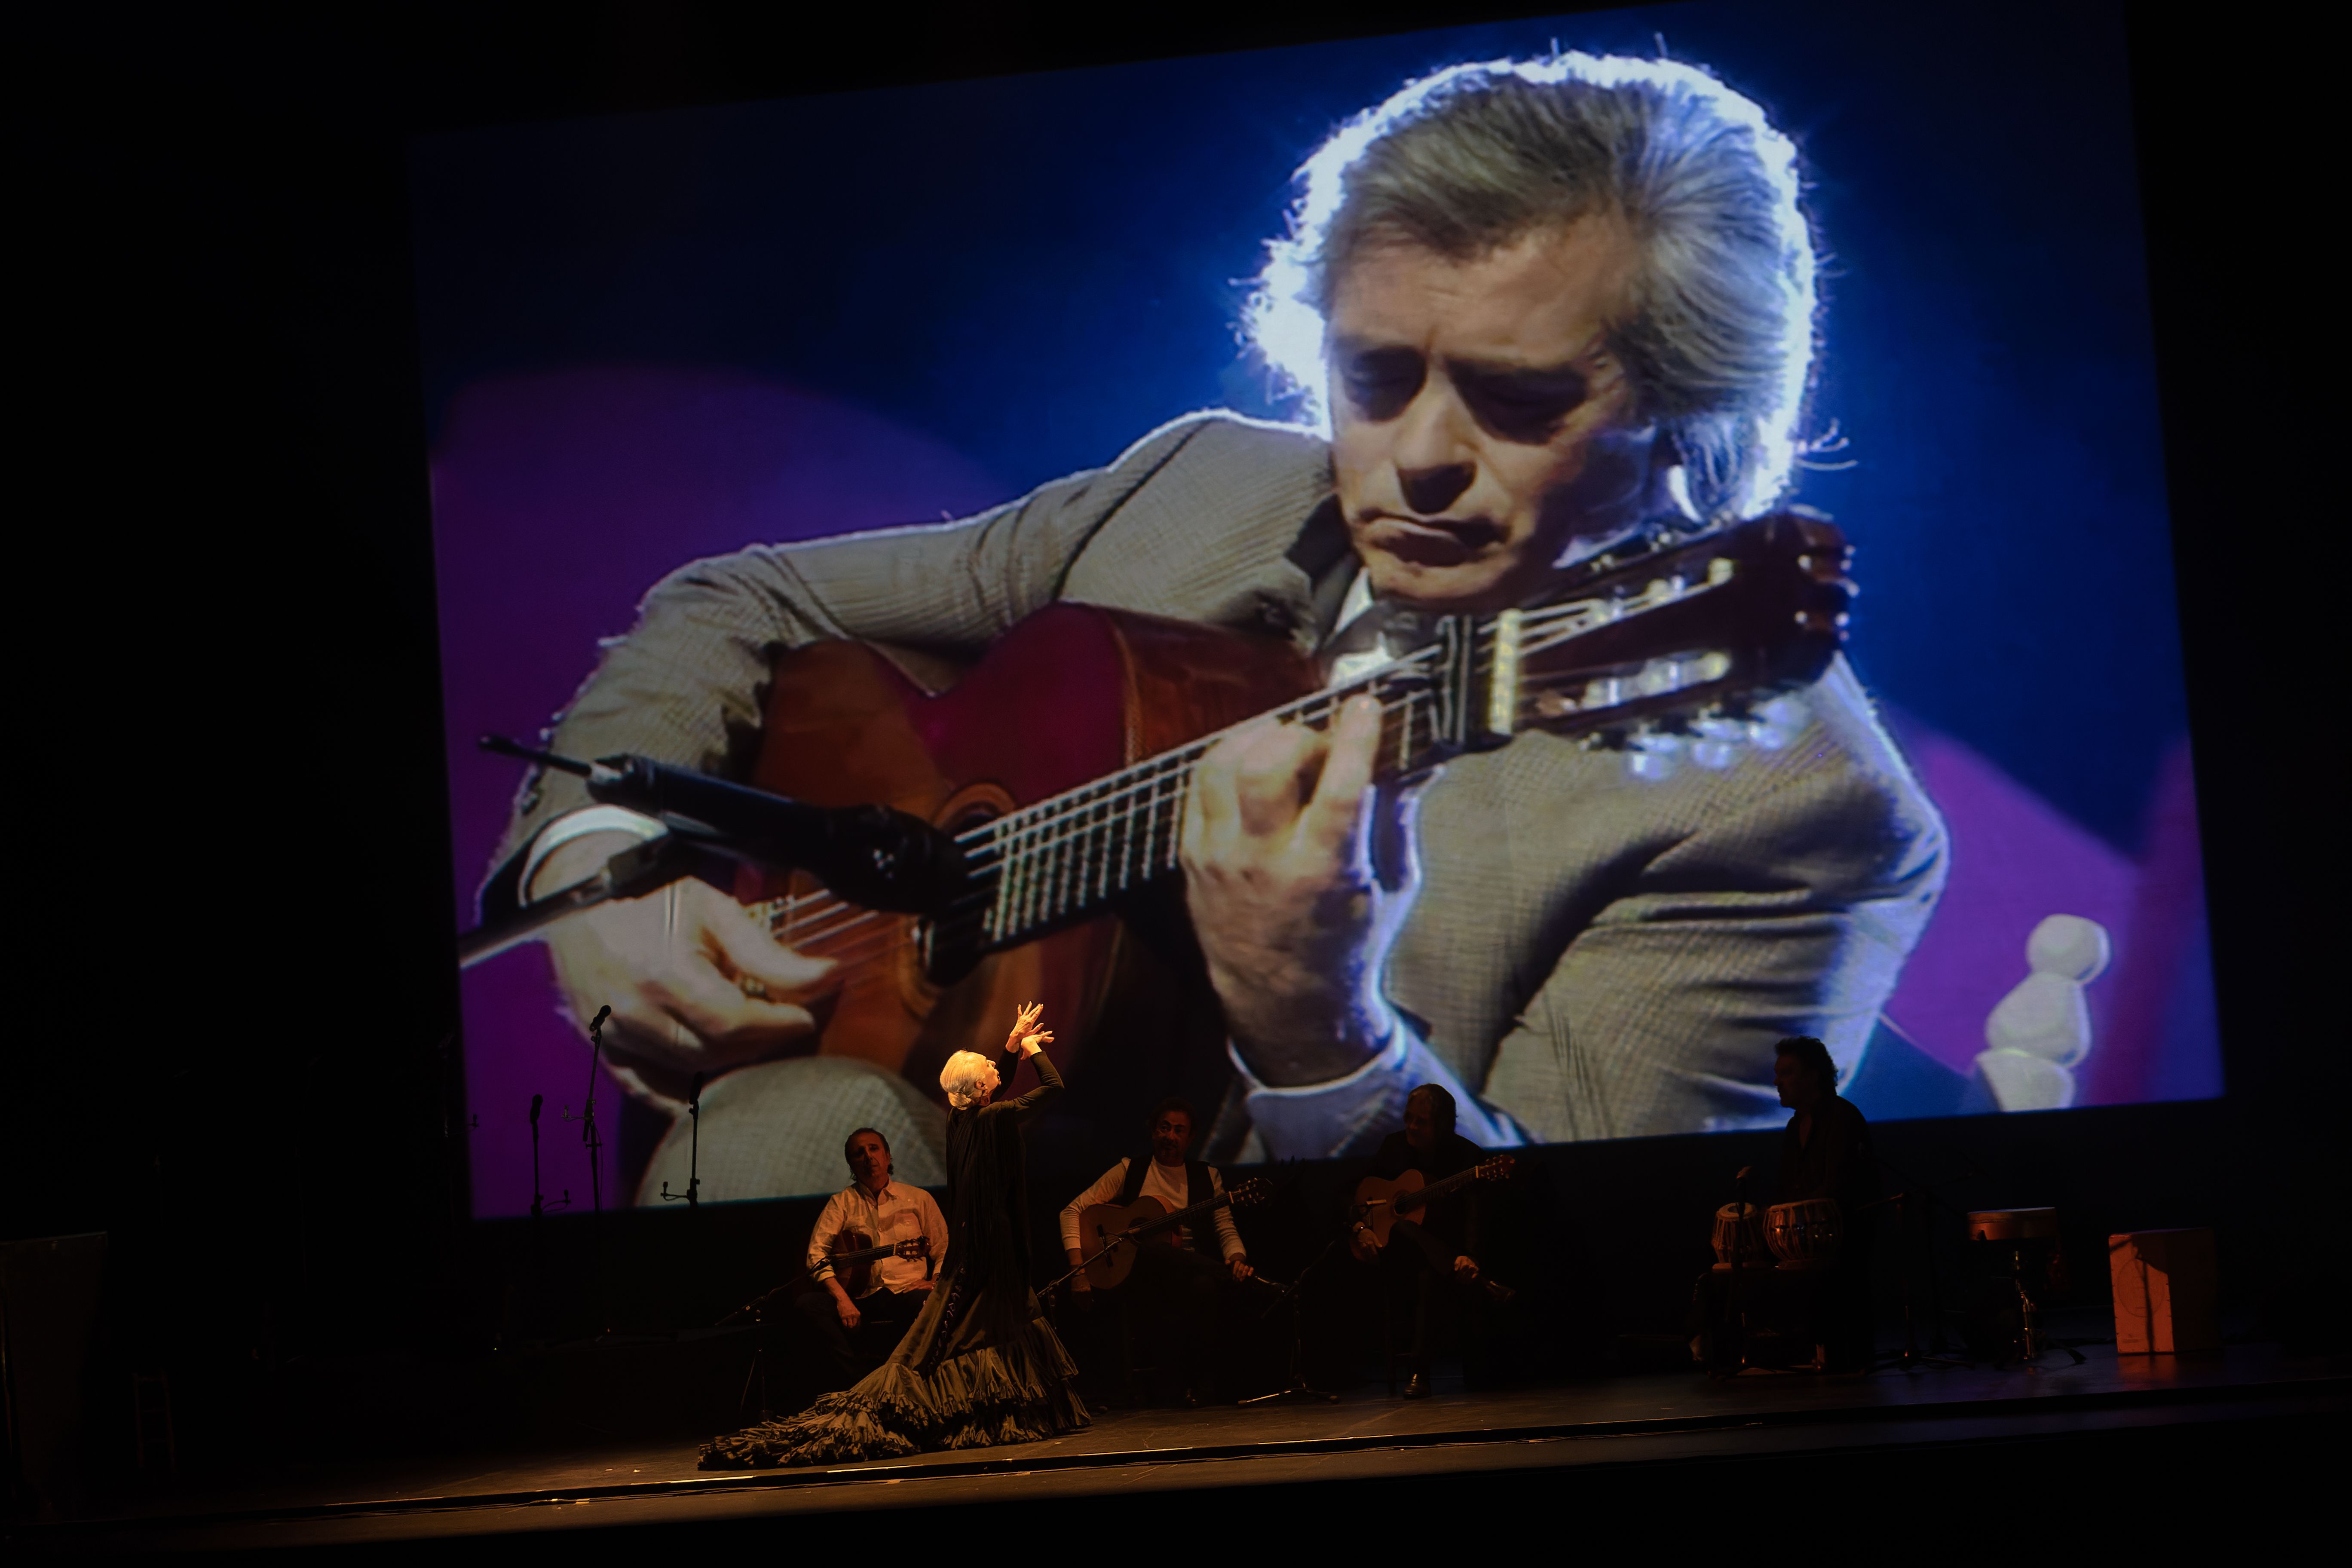 El Teatro Villamarta acogía el pasado martes 25 de abril la gala homenaje a Manolo Sanlúcar, donde se dieron cita los artistas flamencos mas importantes del momento.